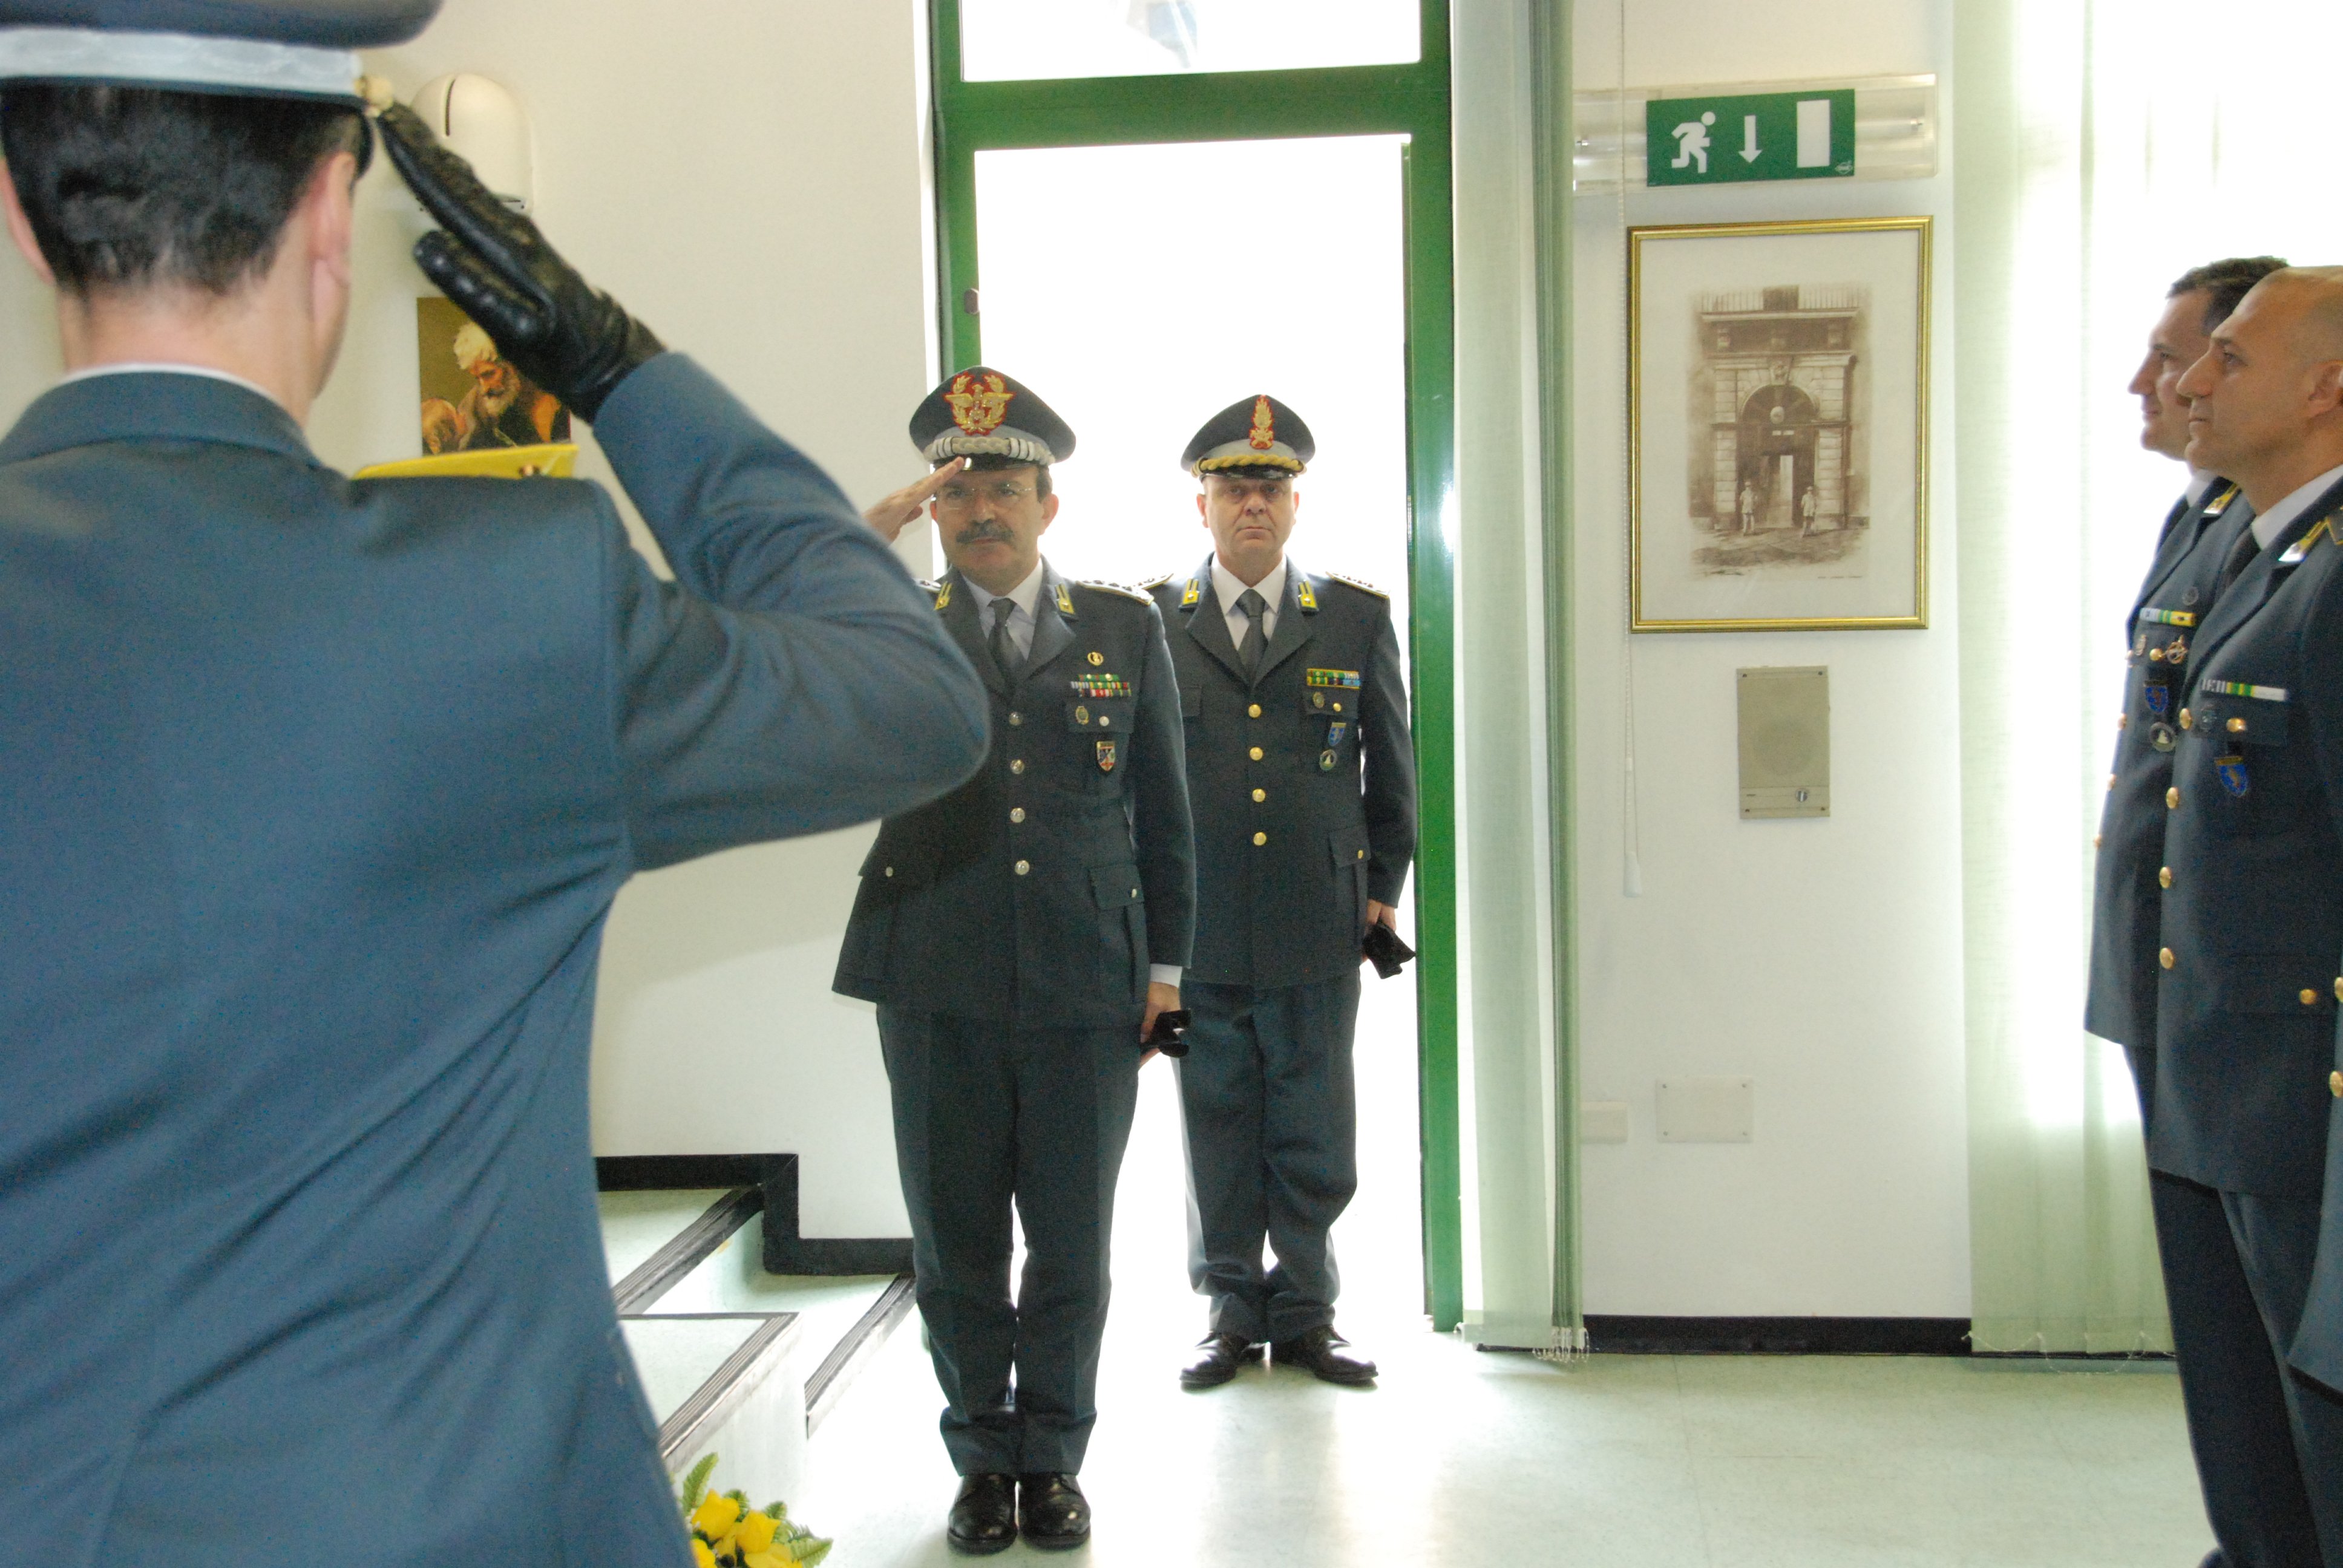 Guardia di Finanza: il Generale Vicanolo in visita ad Alessandria